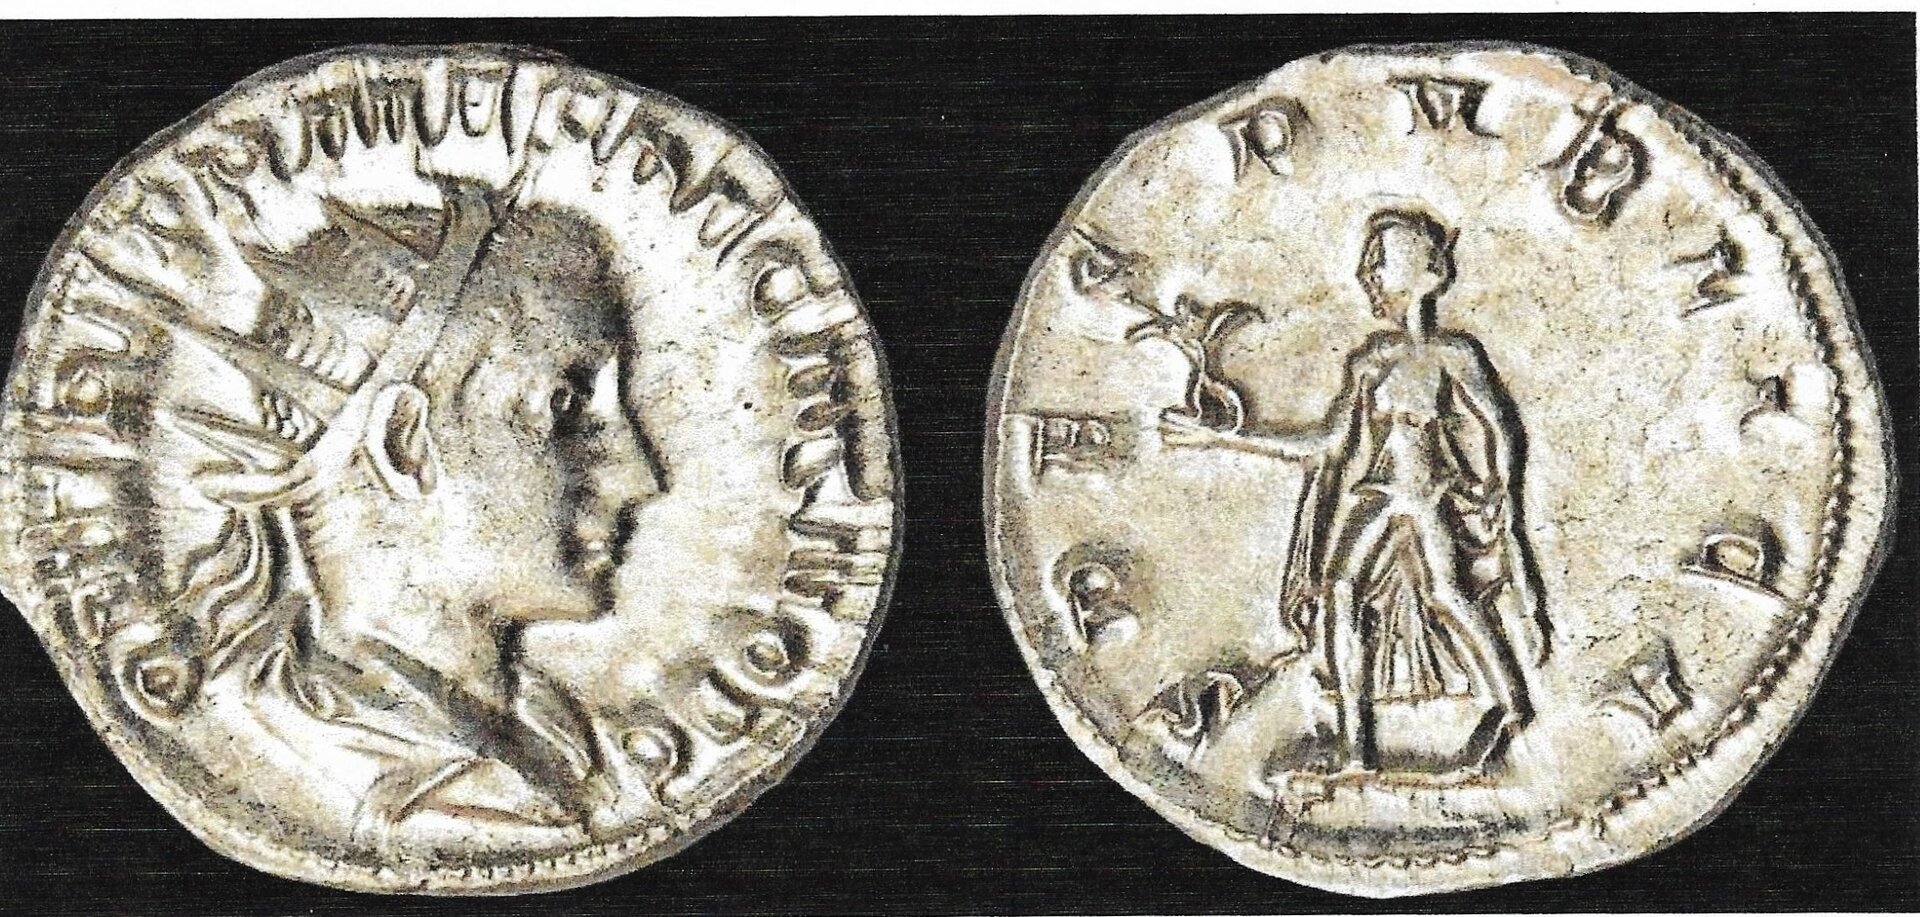 Herennius Etruscus - Spes 1.jpg